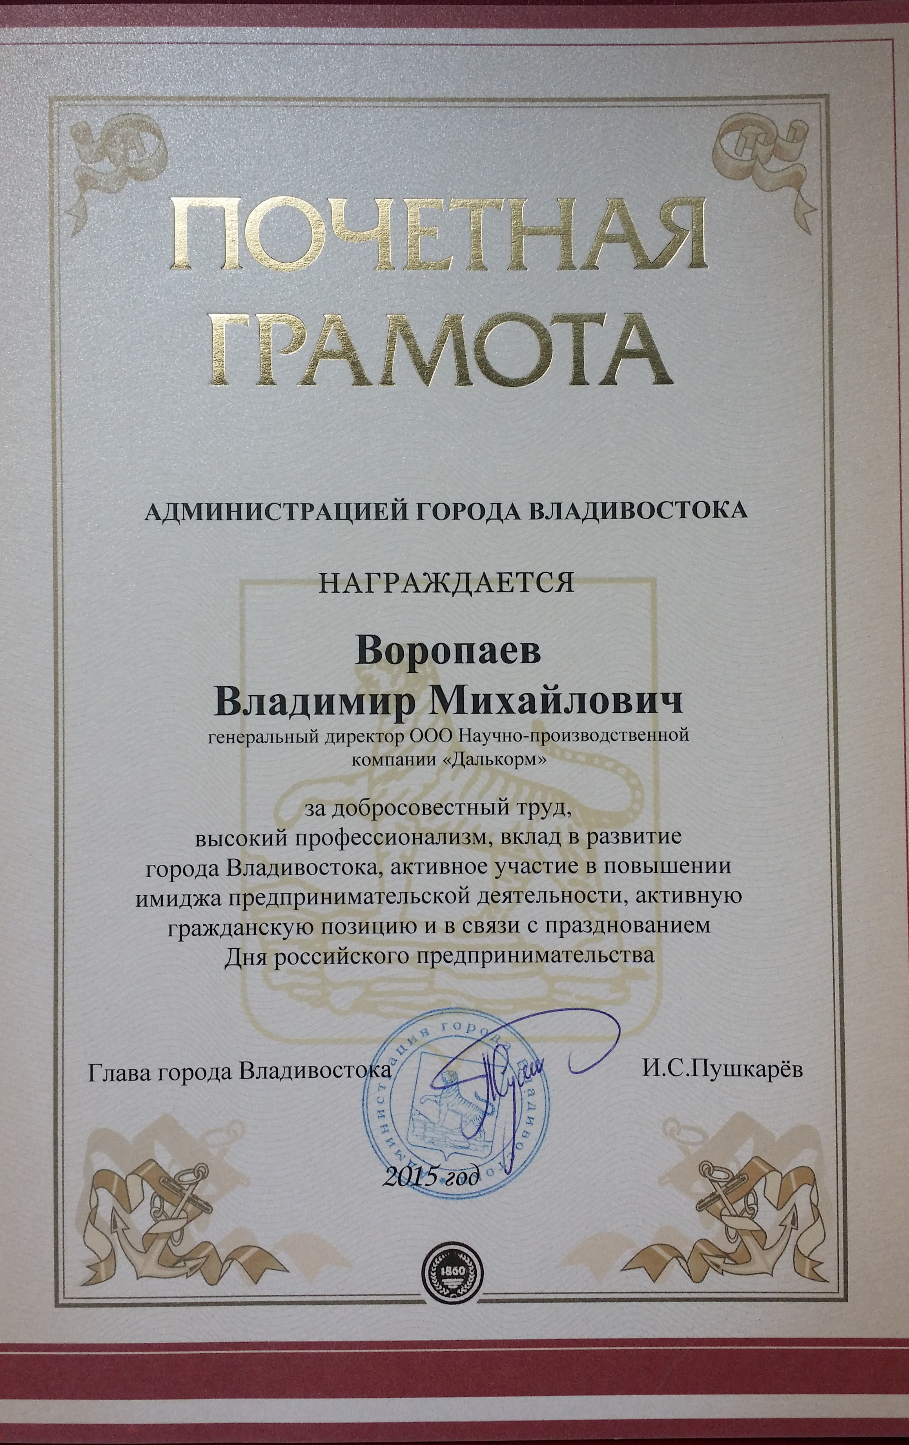 Диплом награждения от мэра города Пушкарева И.С.